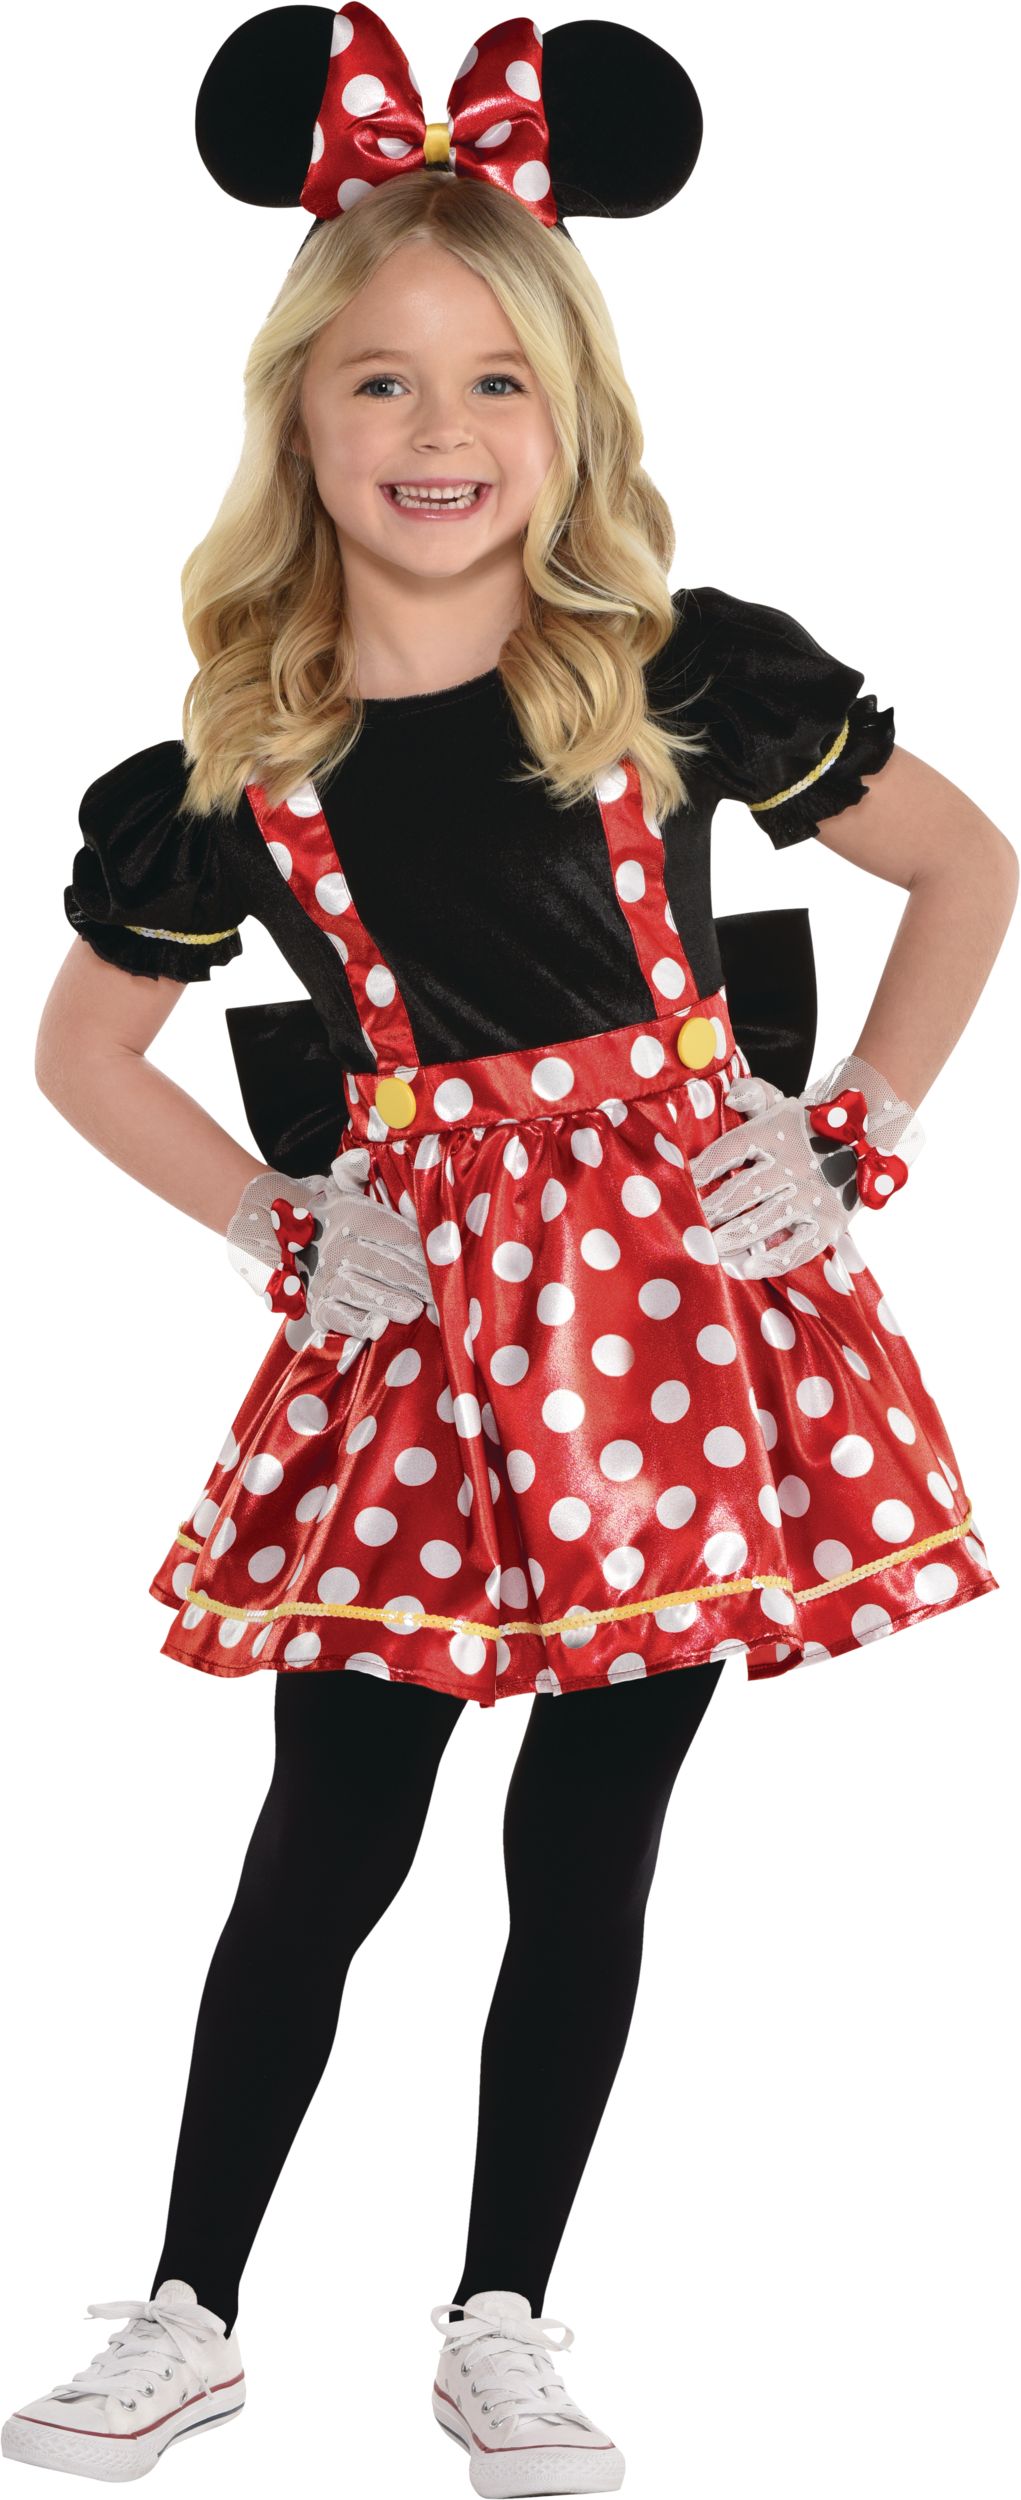 Costume de Disney Minnie Mouse pour enfant et toute petite, robe salopette  à pois rouge/noir avec bandeau, choix de tailles